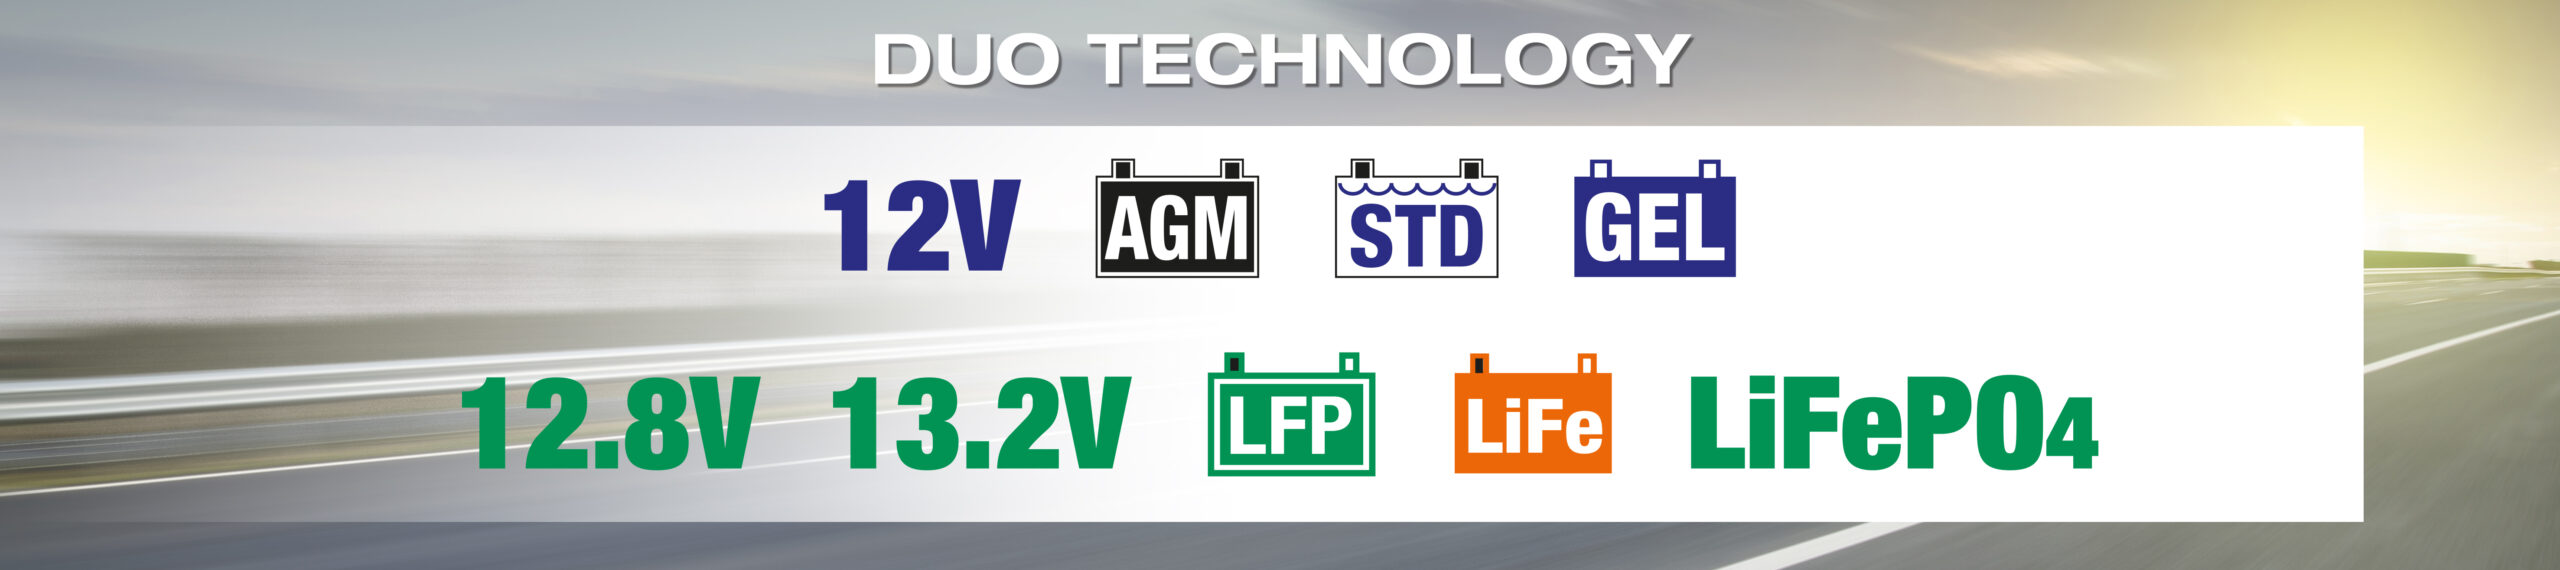 La tecnologia DUO di OptiMate include batterie AGM, STD e GEL da 12V e batterie al litio LiFe/LFP (LiFePO4) da 12.8V/13.2V